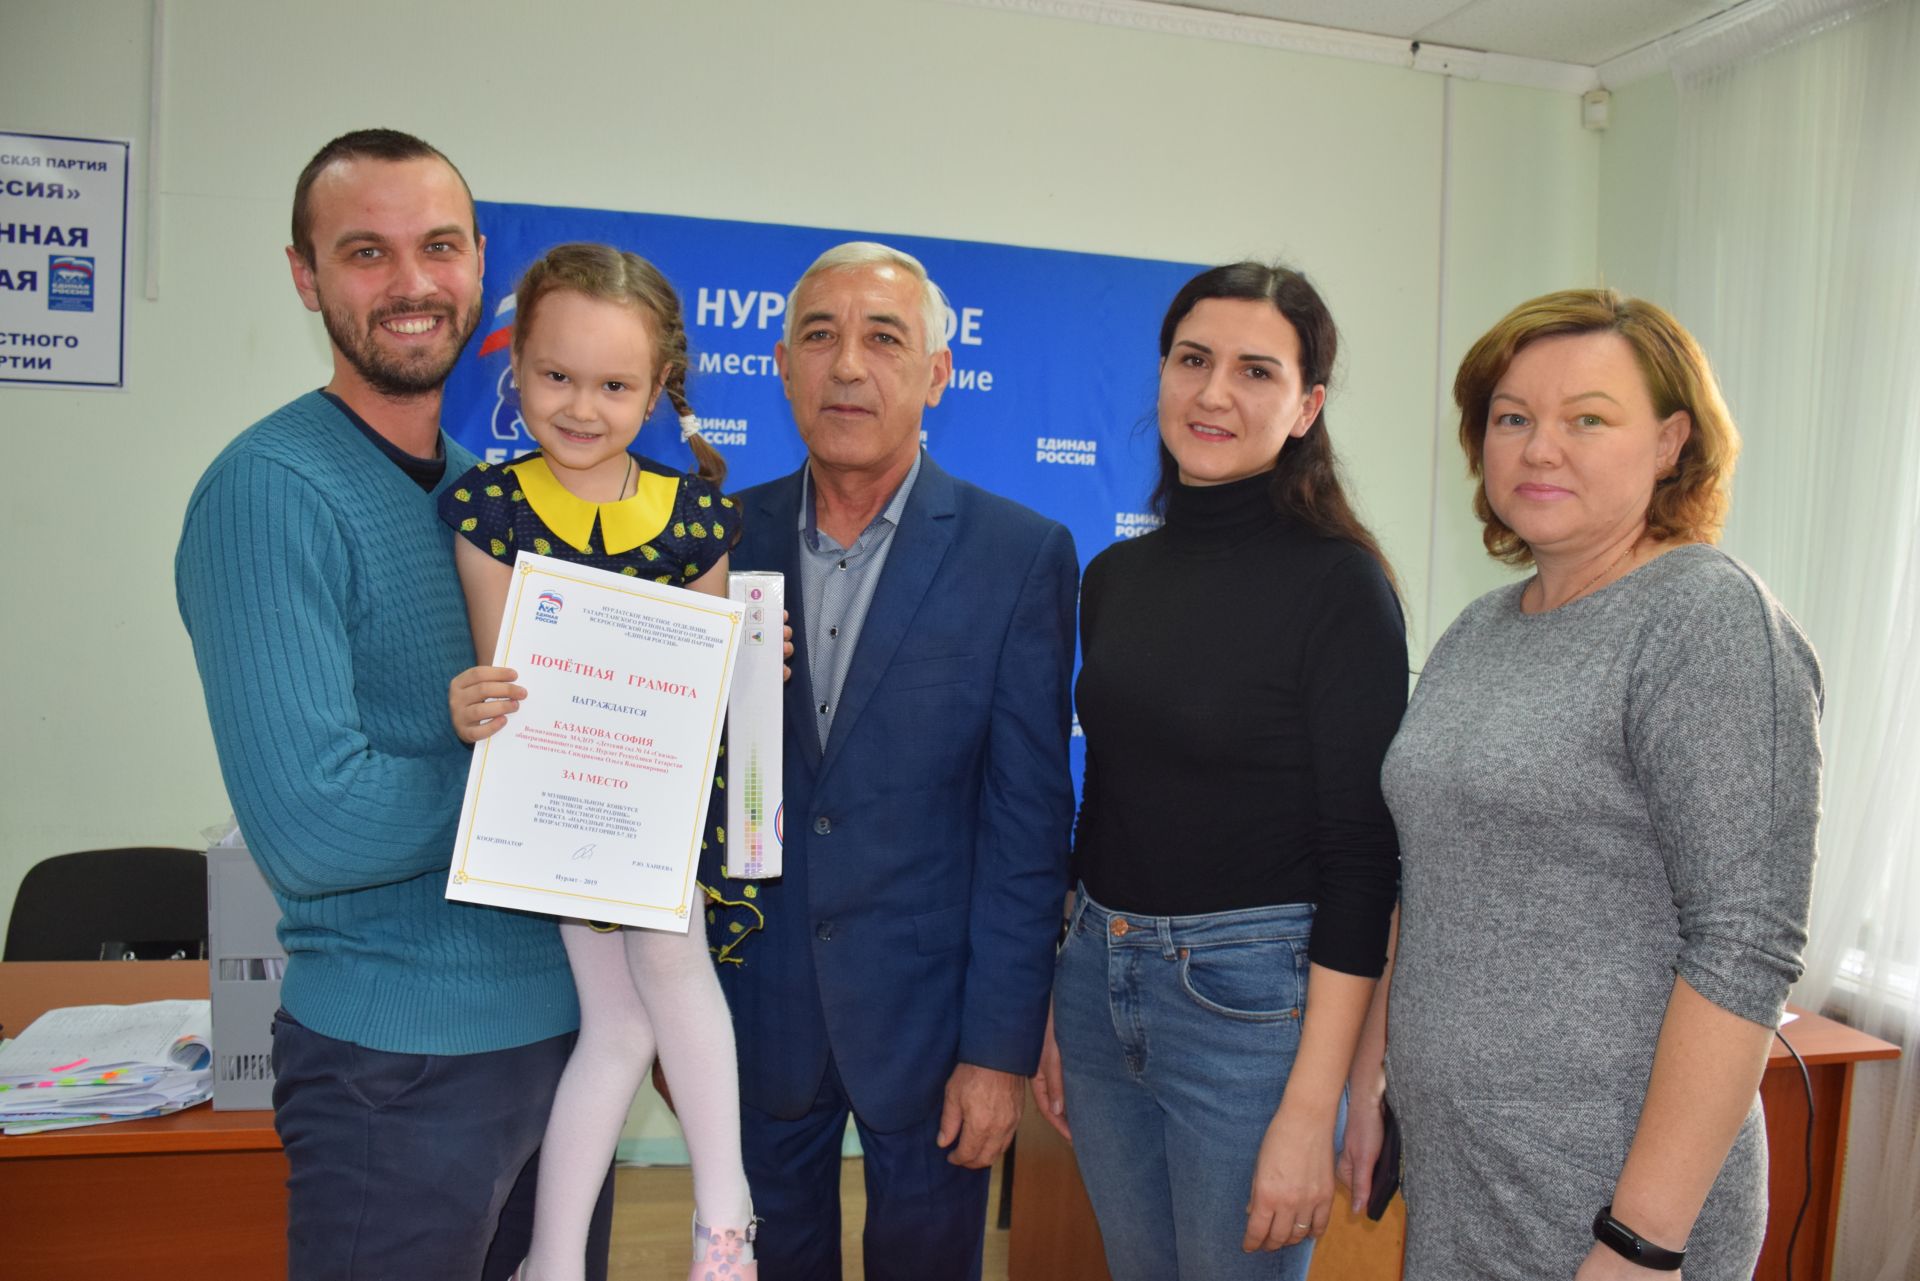 Нурлатские дети получили подарки от местного отделения партии «Единая Россия»